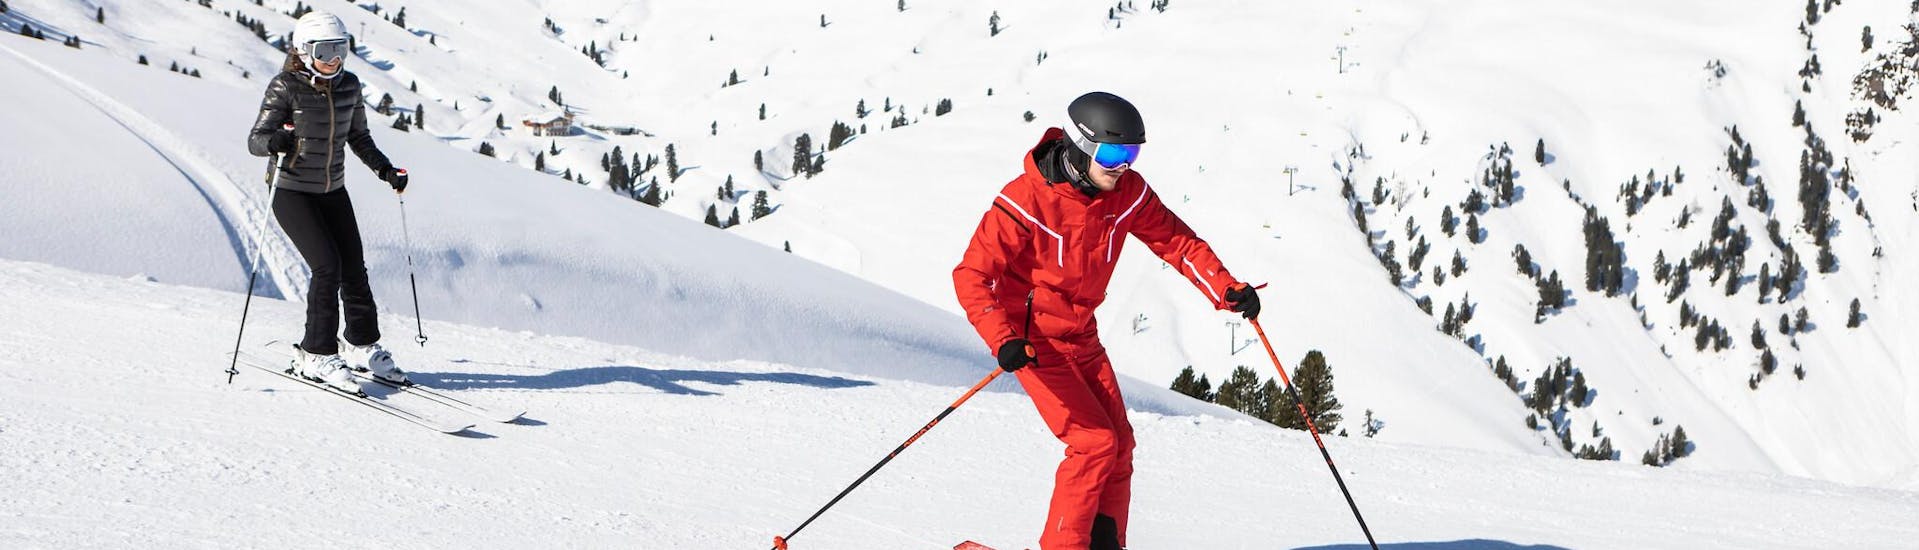 Un skieur travaille sa technique de ski avec son moniteur de ski lors d'un cours particulier de ski dans la destination de ski Région de Forville.